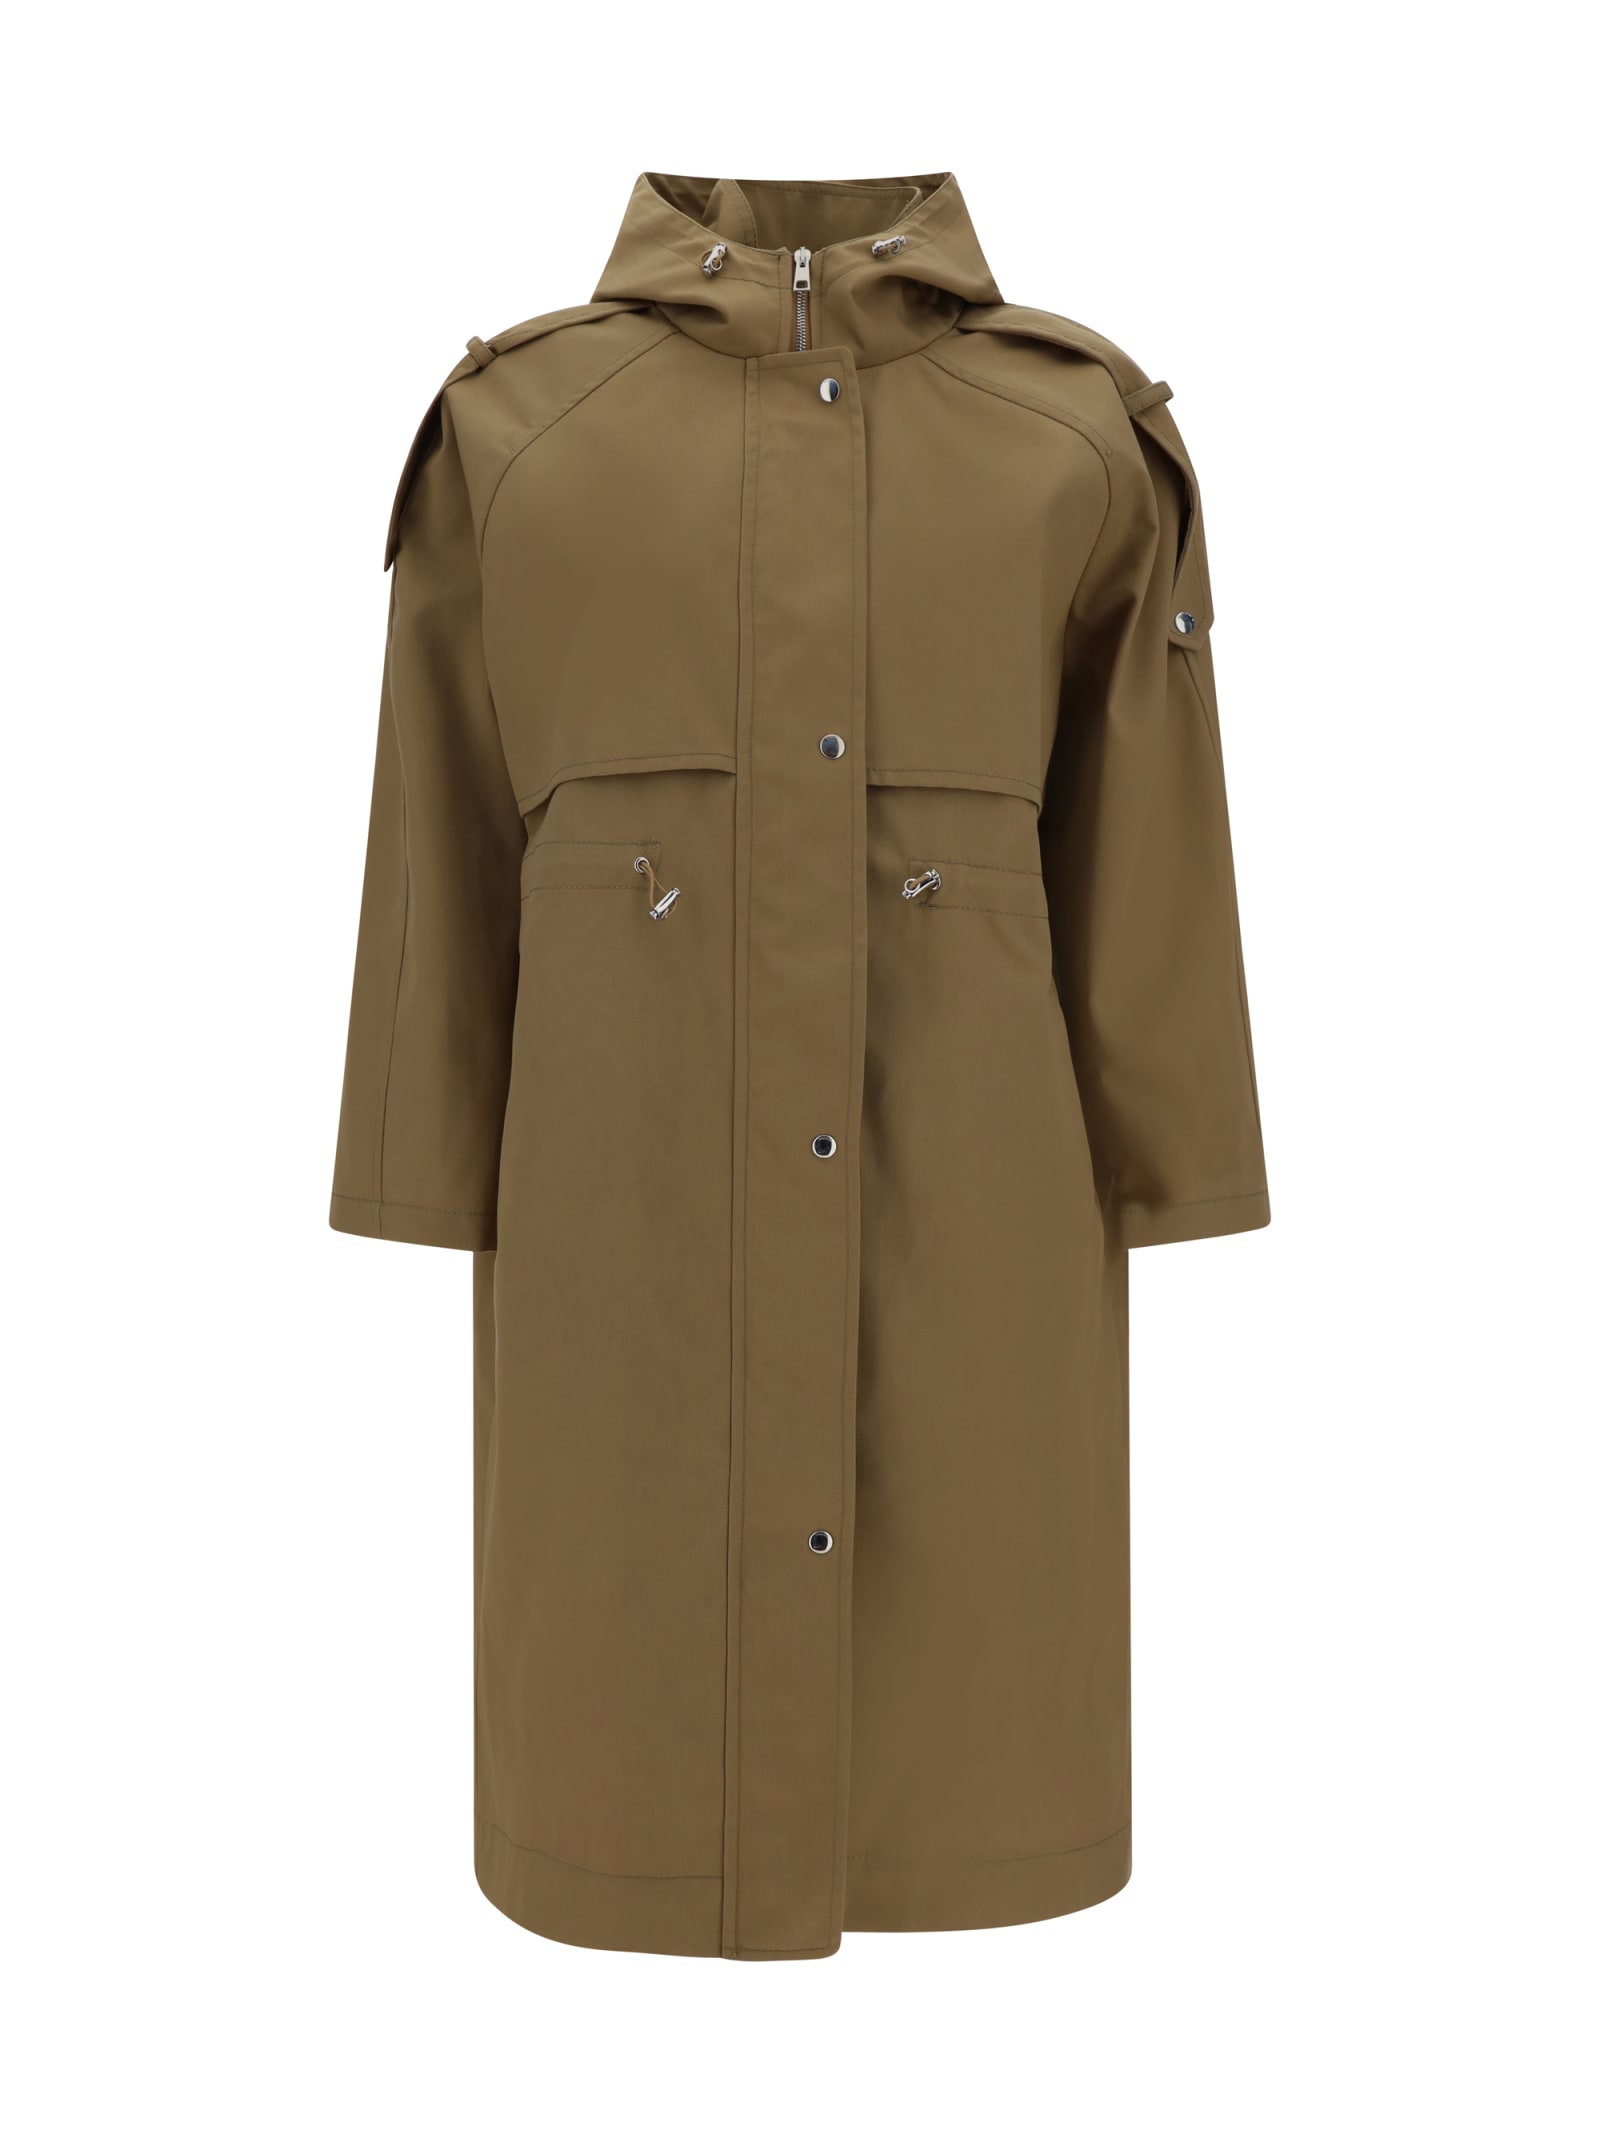 Paltò belted wide-lapel coat - Brown